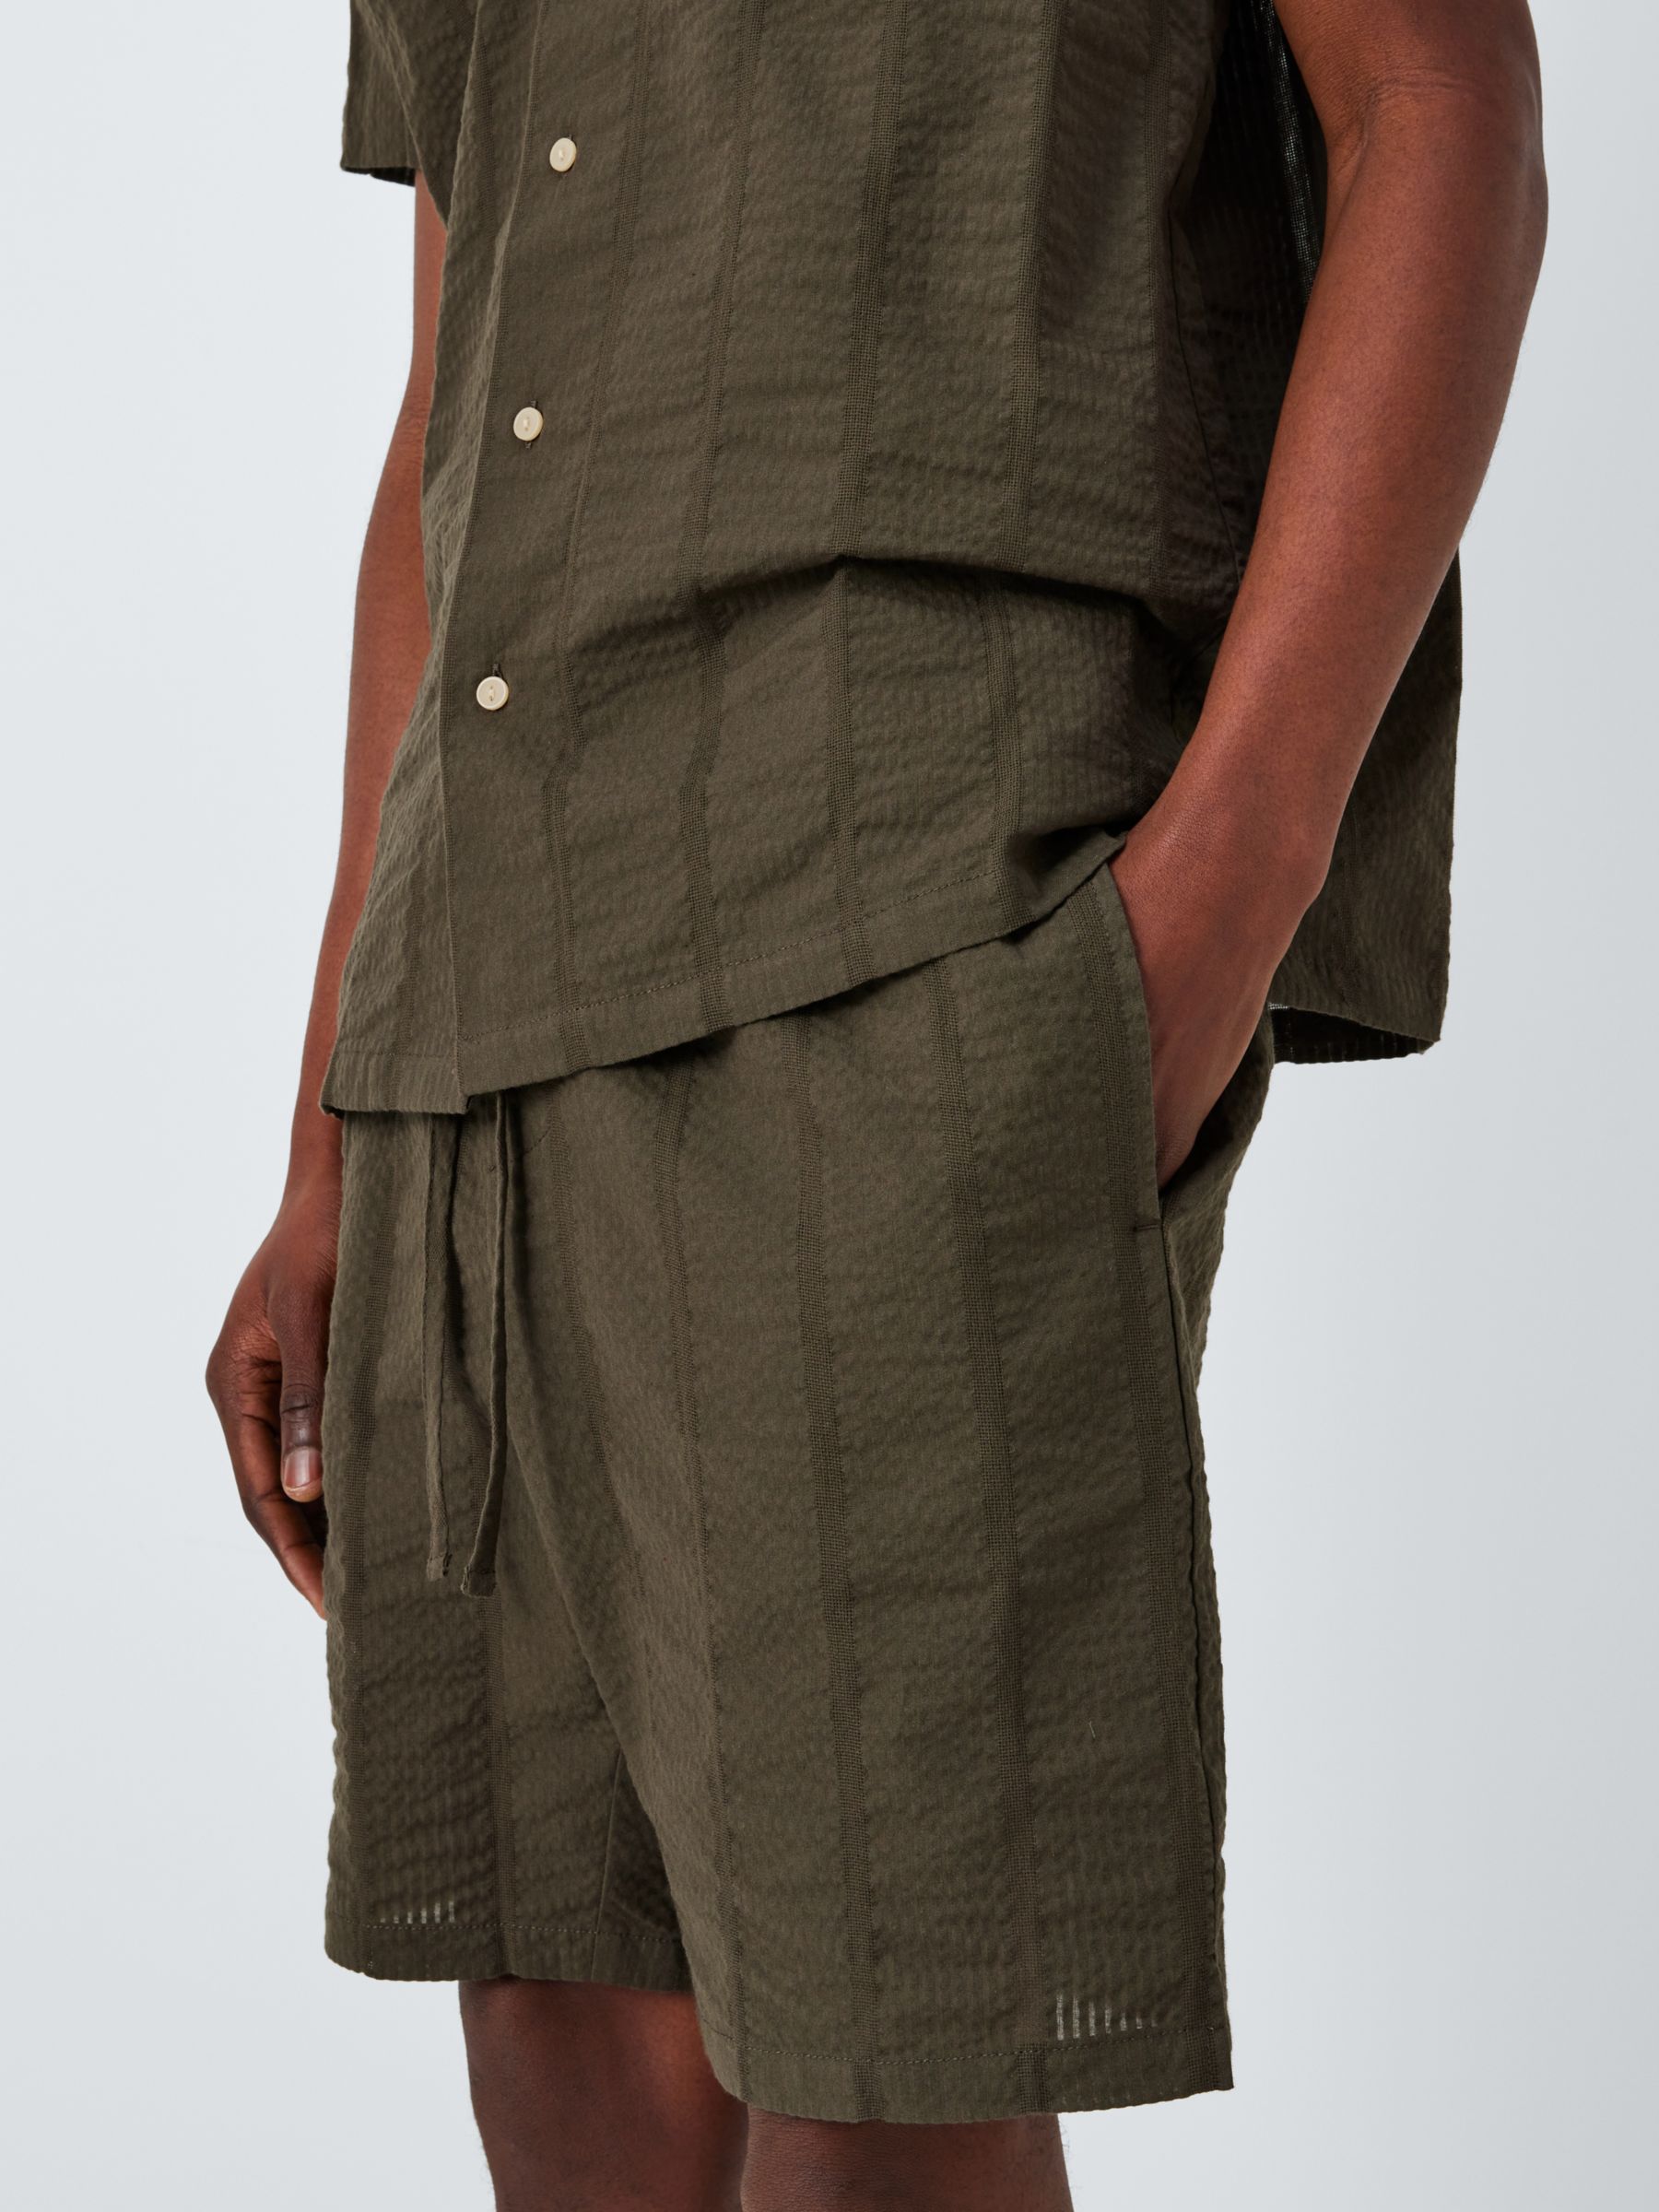 John Lewis Organic Cotton Seersucker Stripe Lounge Shorts, Khaki, M